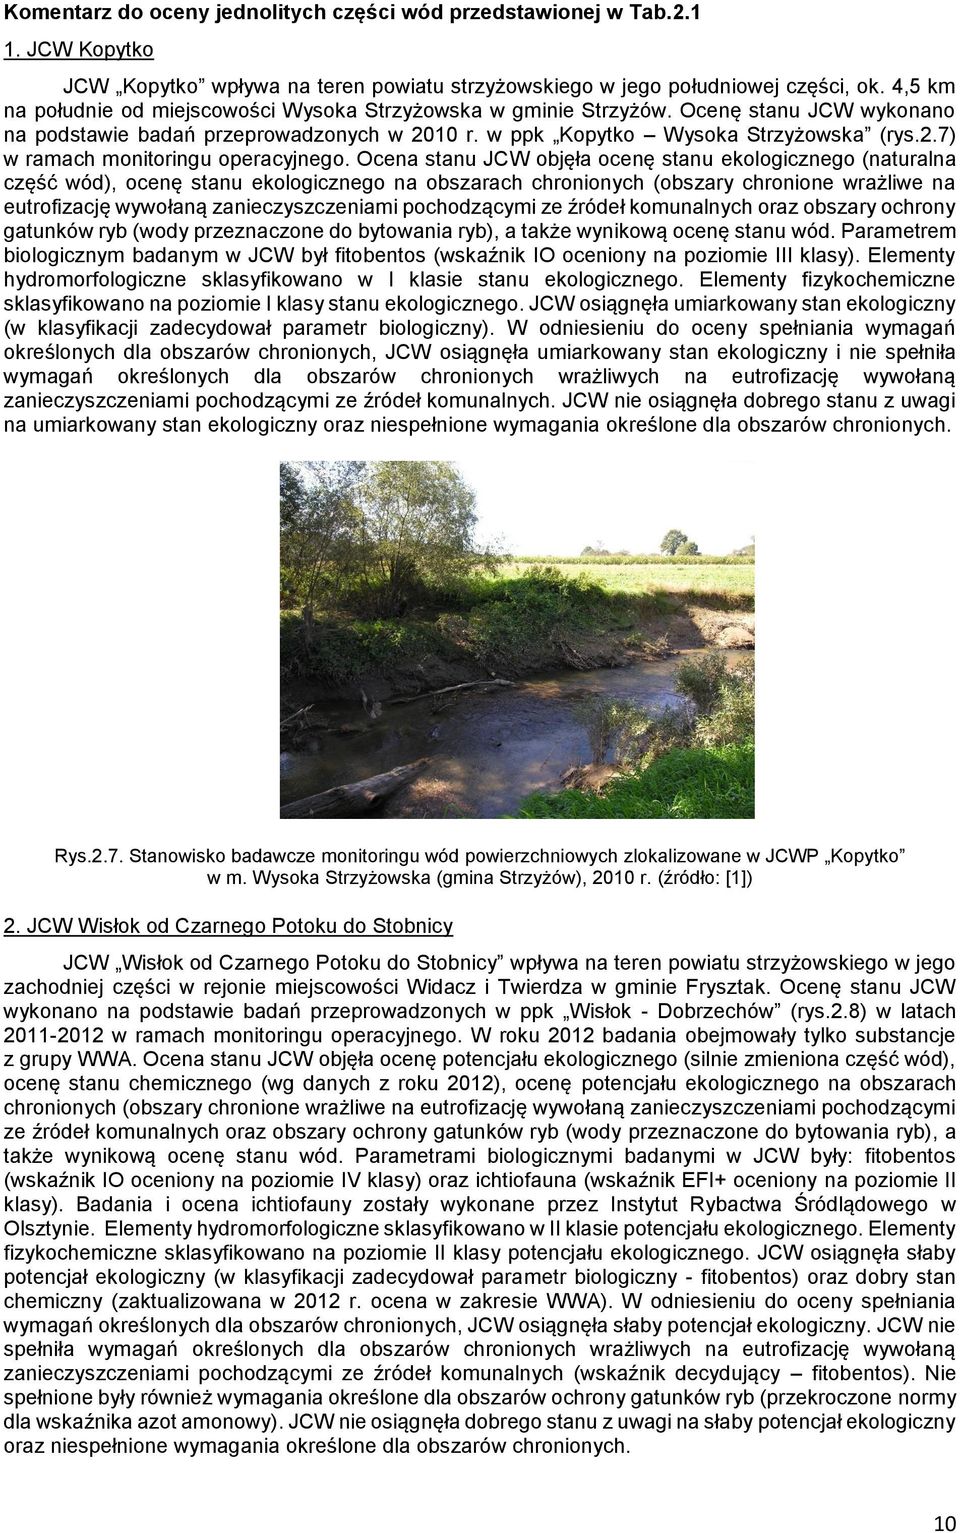 Ocena stanu JCW objęła ocenę stanu ekologicznego (naturalna część wód), ocenę stanu ekologicznego na obszarach chronionych (obszary chronione wrażliwe na eutrofizację wywołaną zanieczyszczeniami